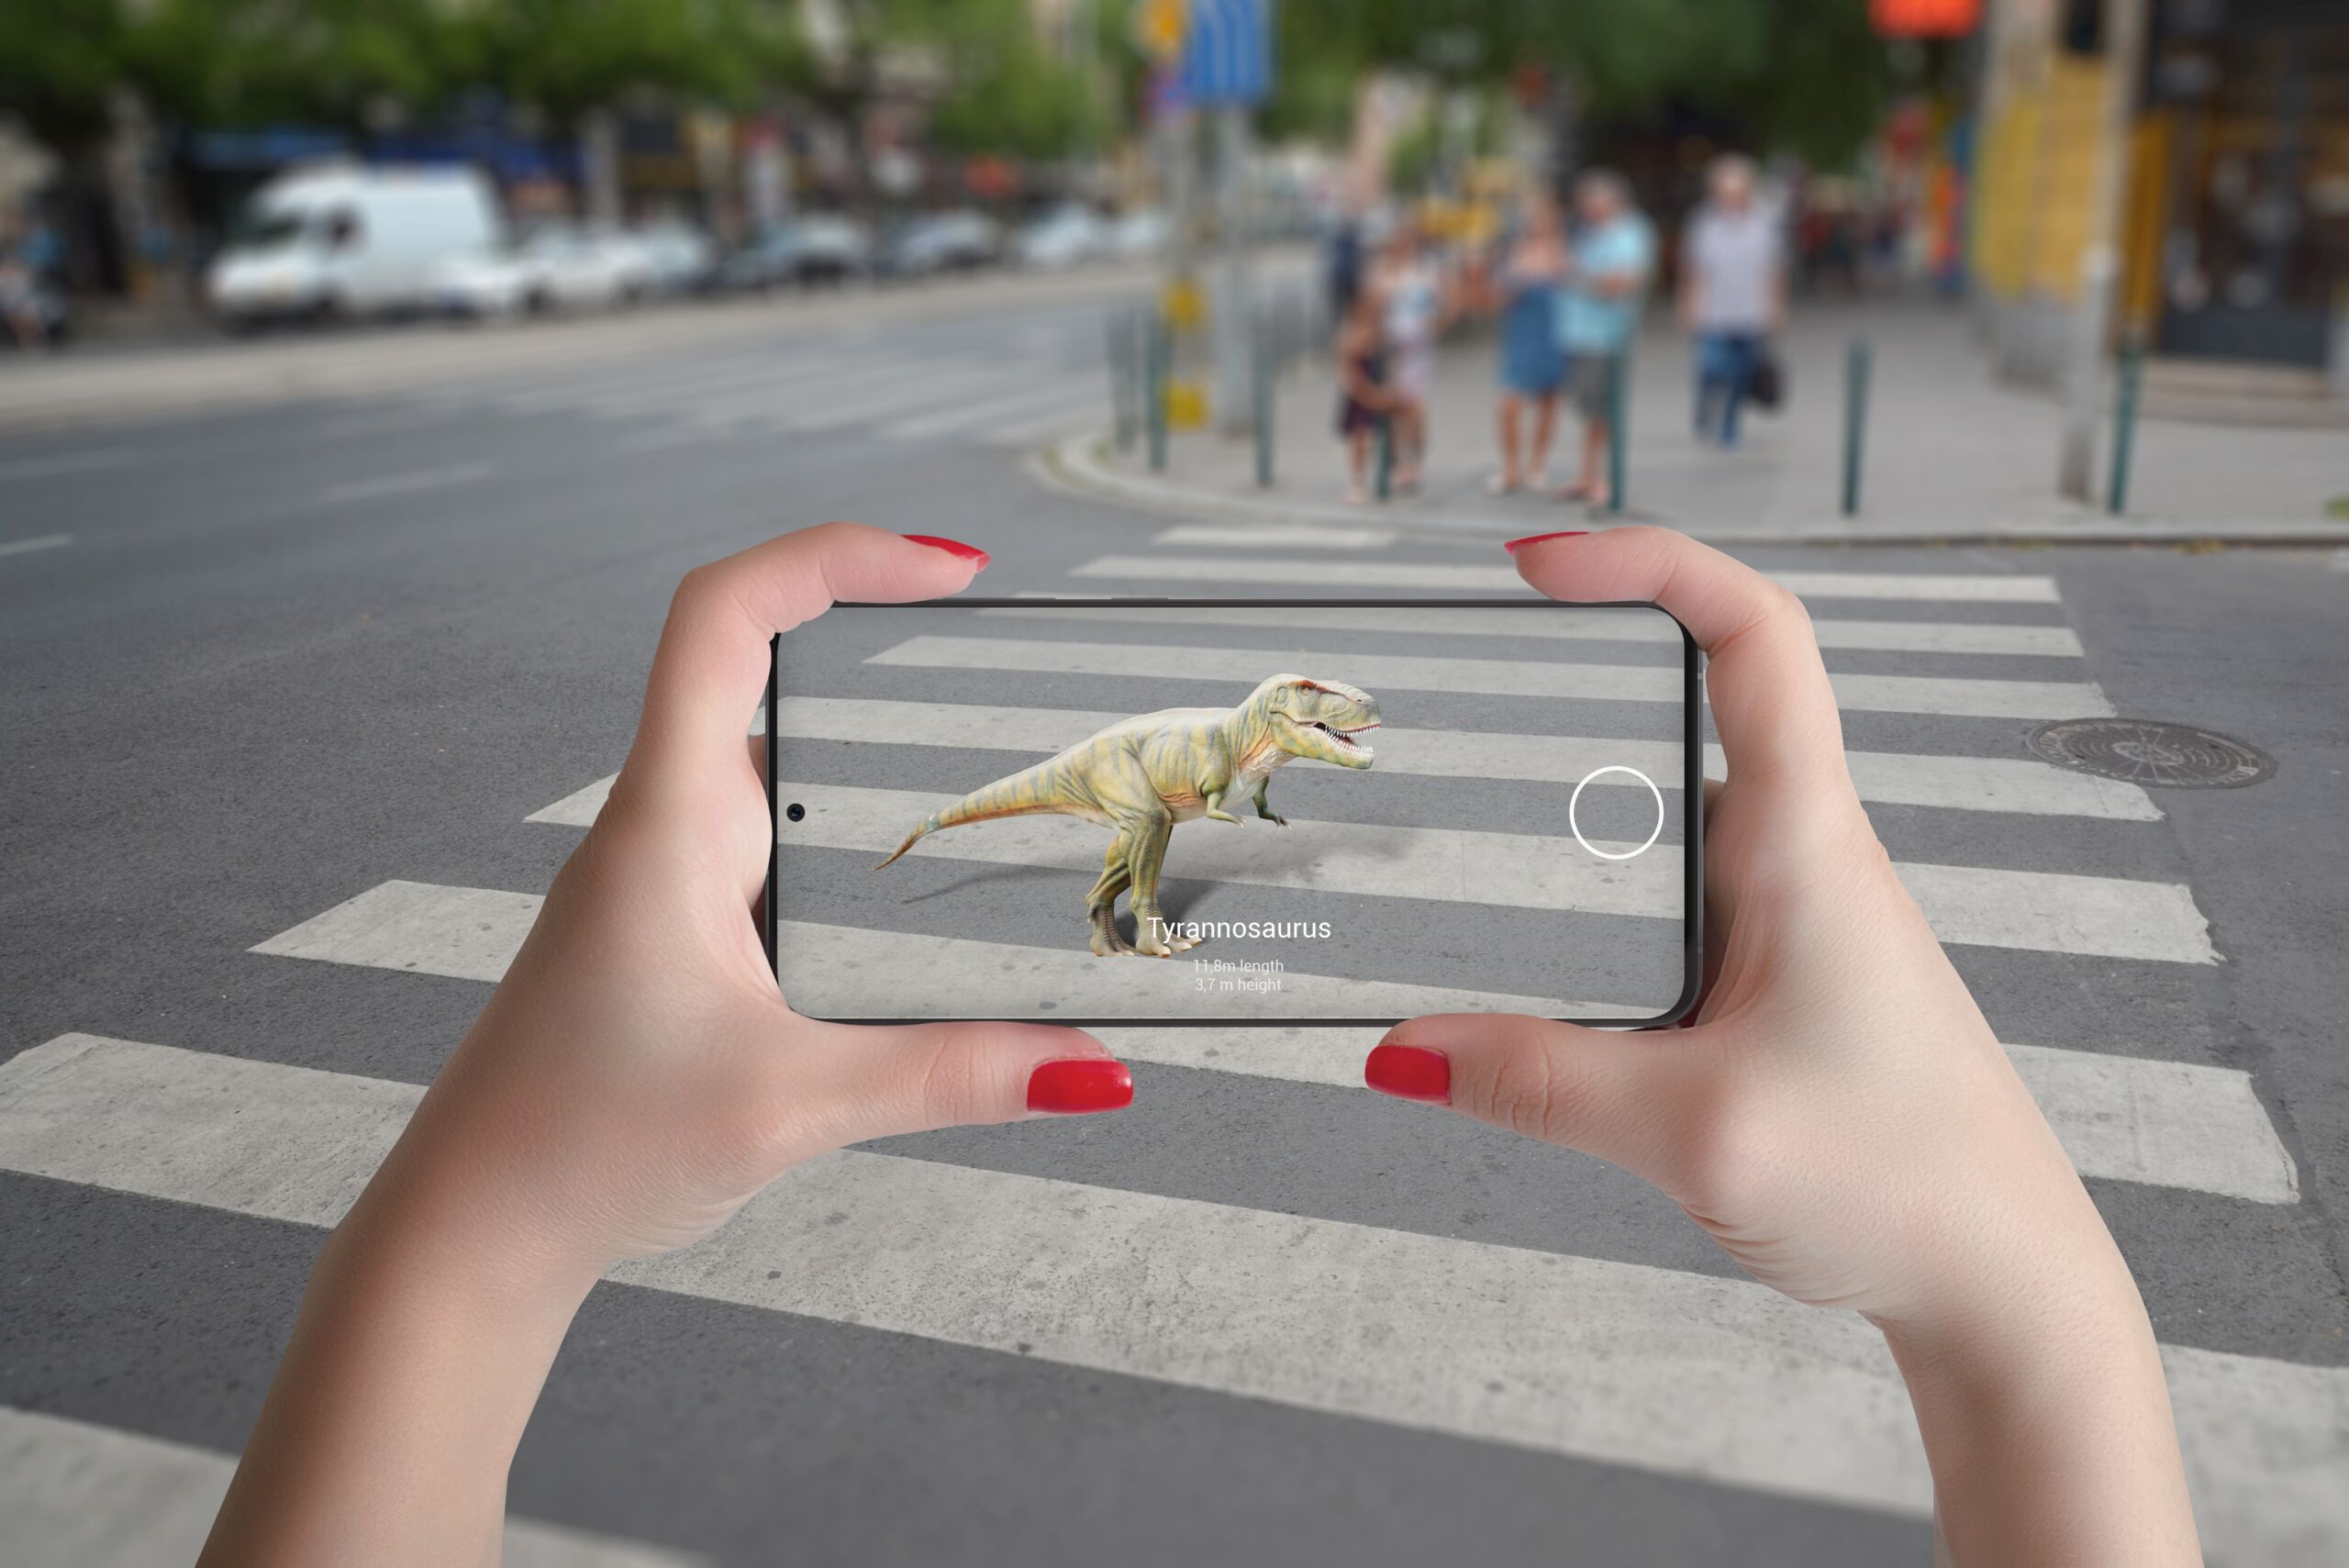 Dowiedz się jak technologia pozwala odkryć świat dinozaurów / Fot. RSplaneta, Shutterstock.com